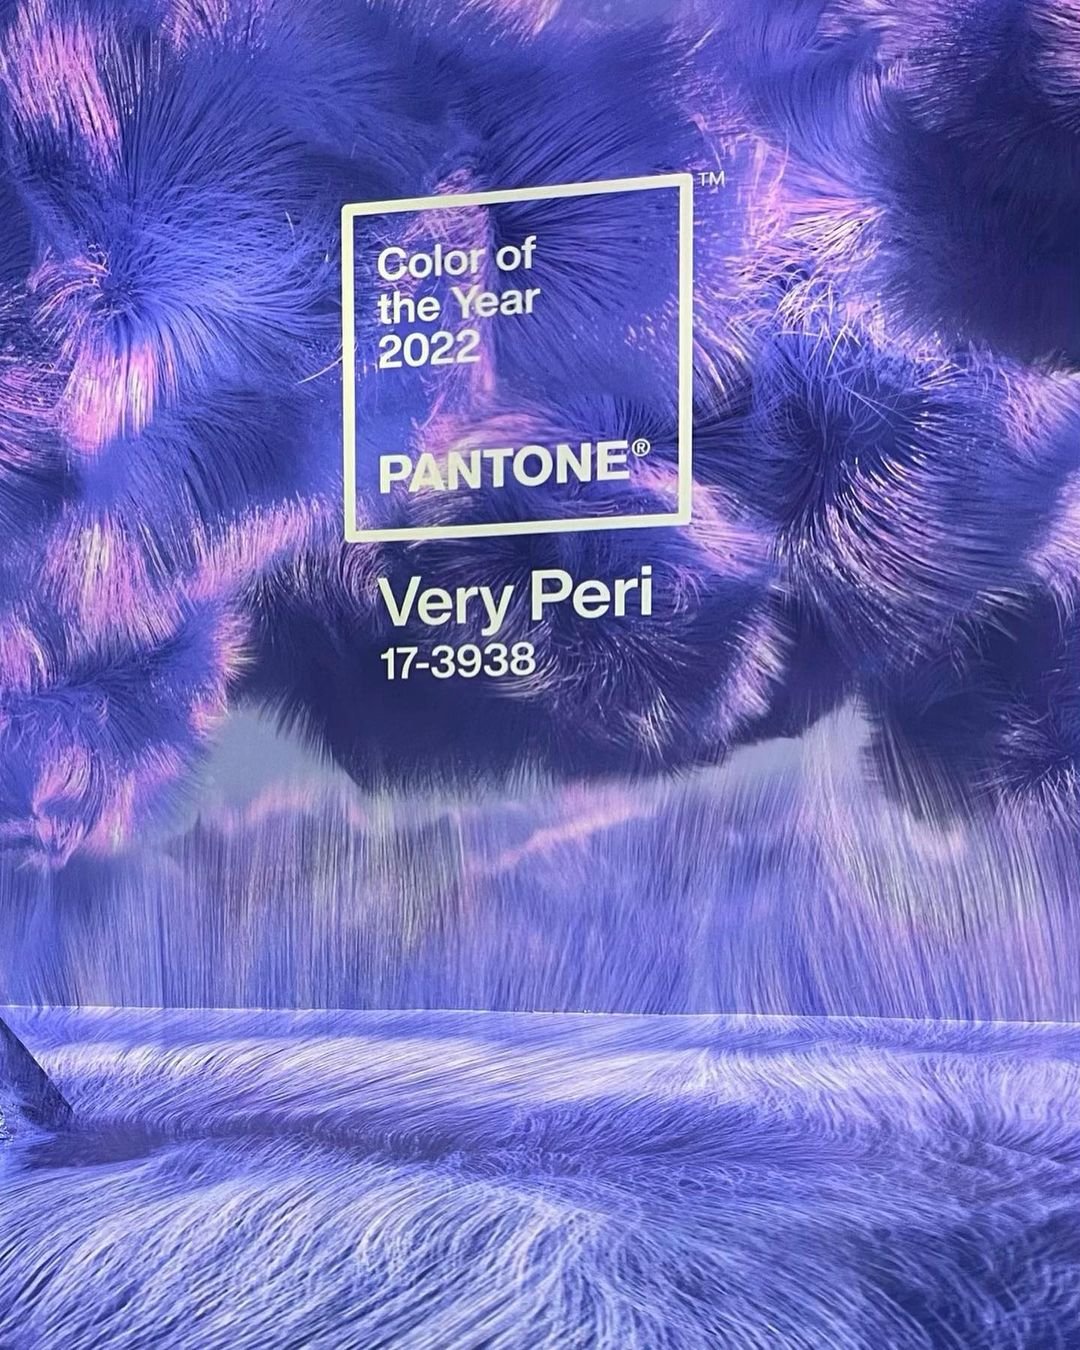 Barvou roku 2022 je dle Pantone fialová